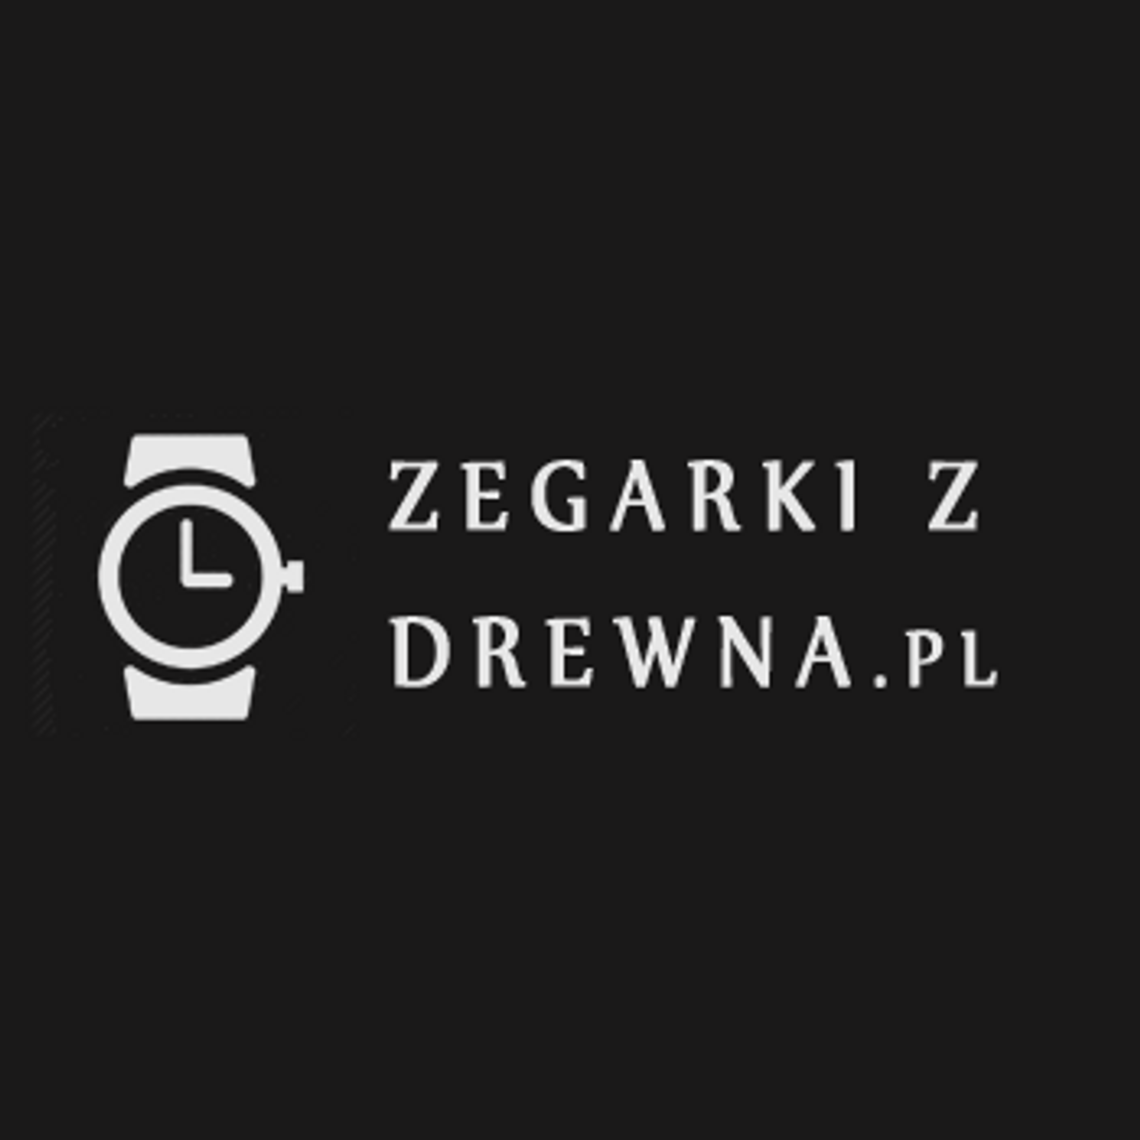 Modne drewniane zegarki - Zegarkizdrewna.pl